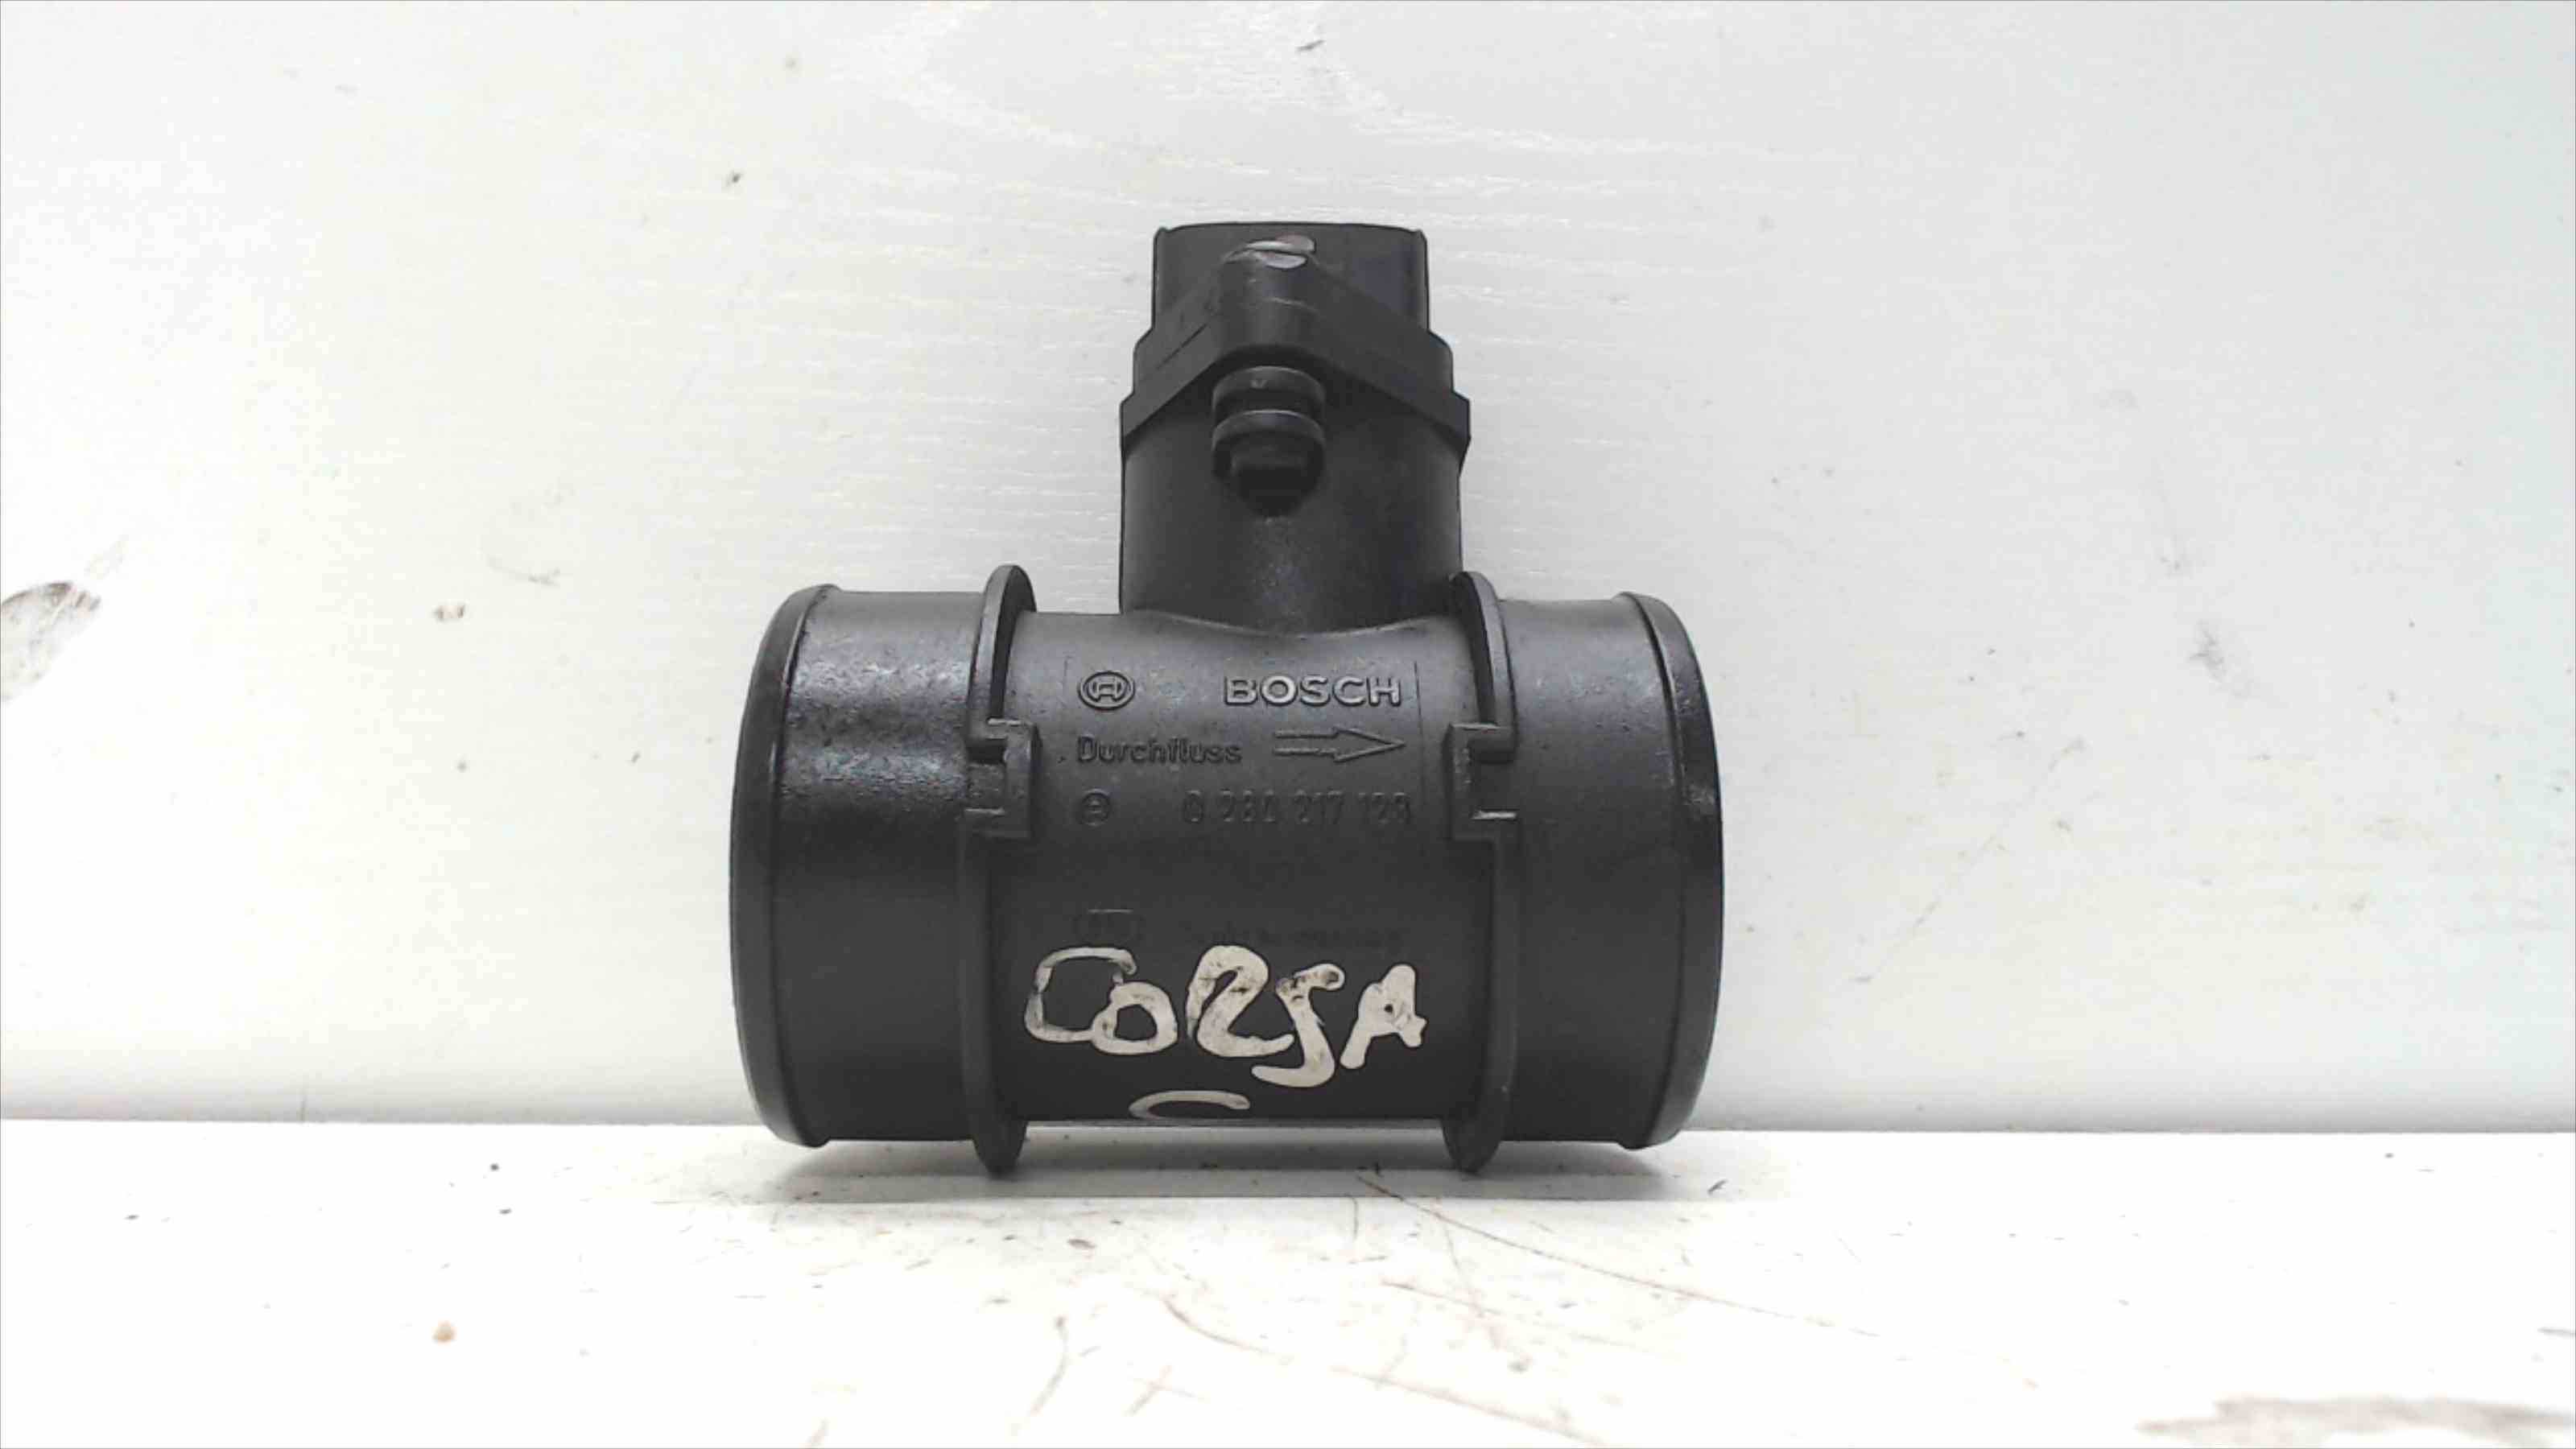 OPEL Corsa B (1993-2000) Mass Air Flow Sensor MAF 0280217123 24689756